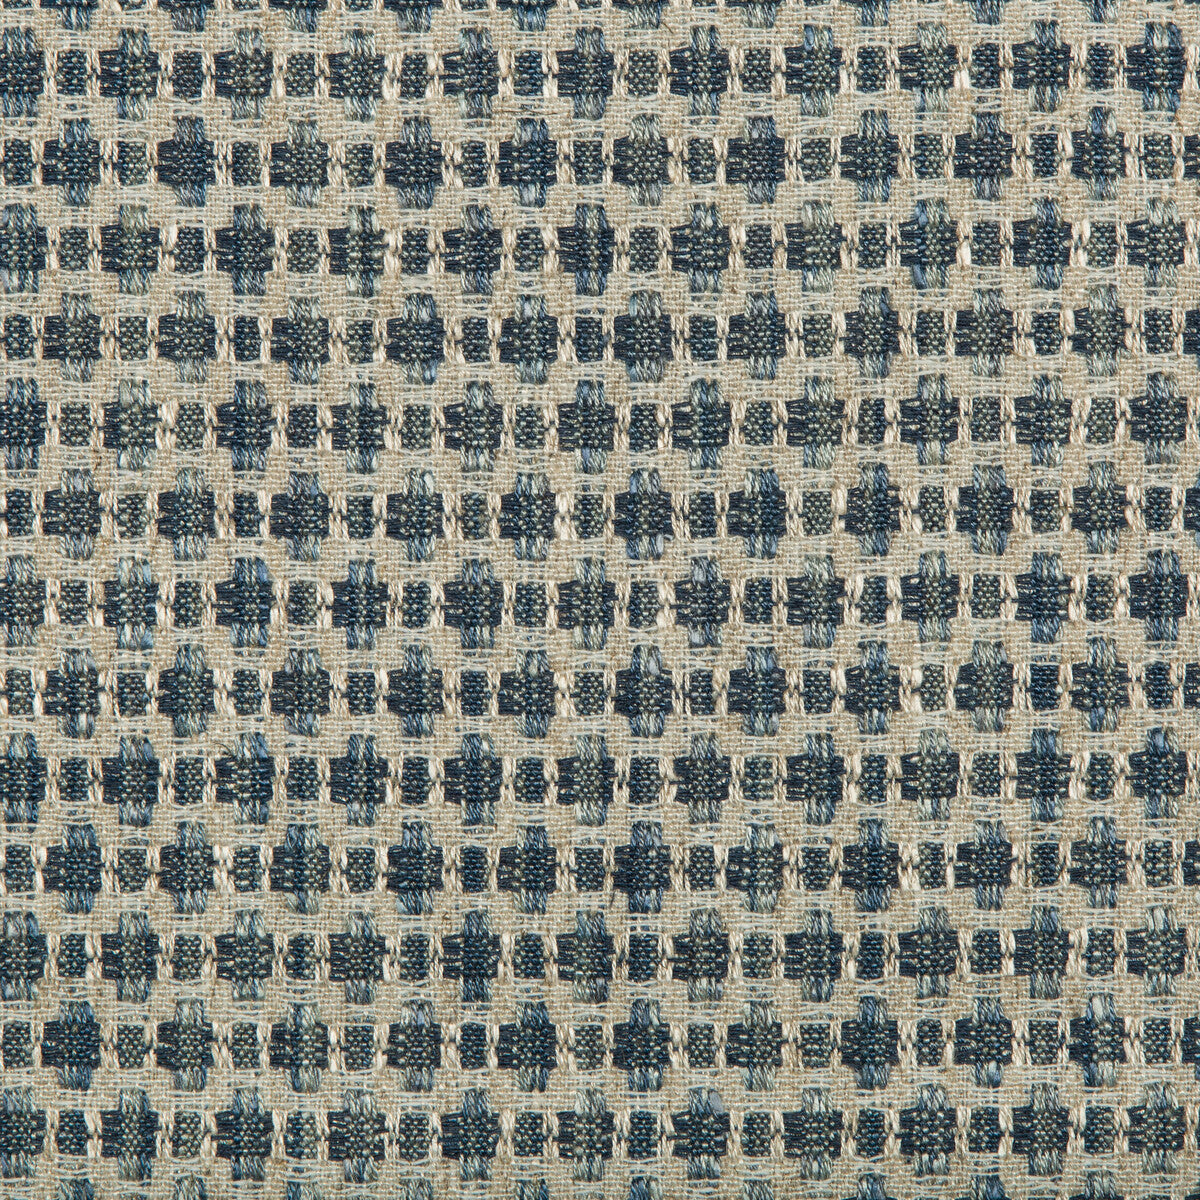 Kravet Design fabric in 35622-5 color - pattern 35622.5.0 - by Kravet Design